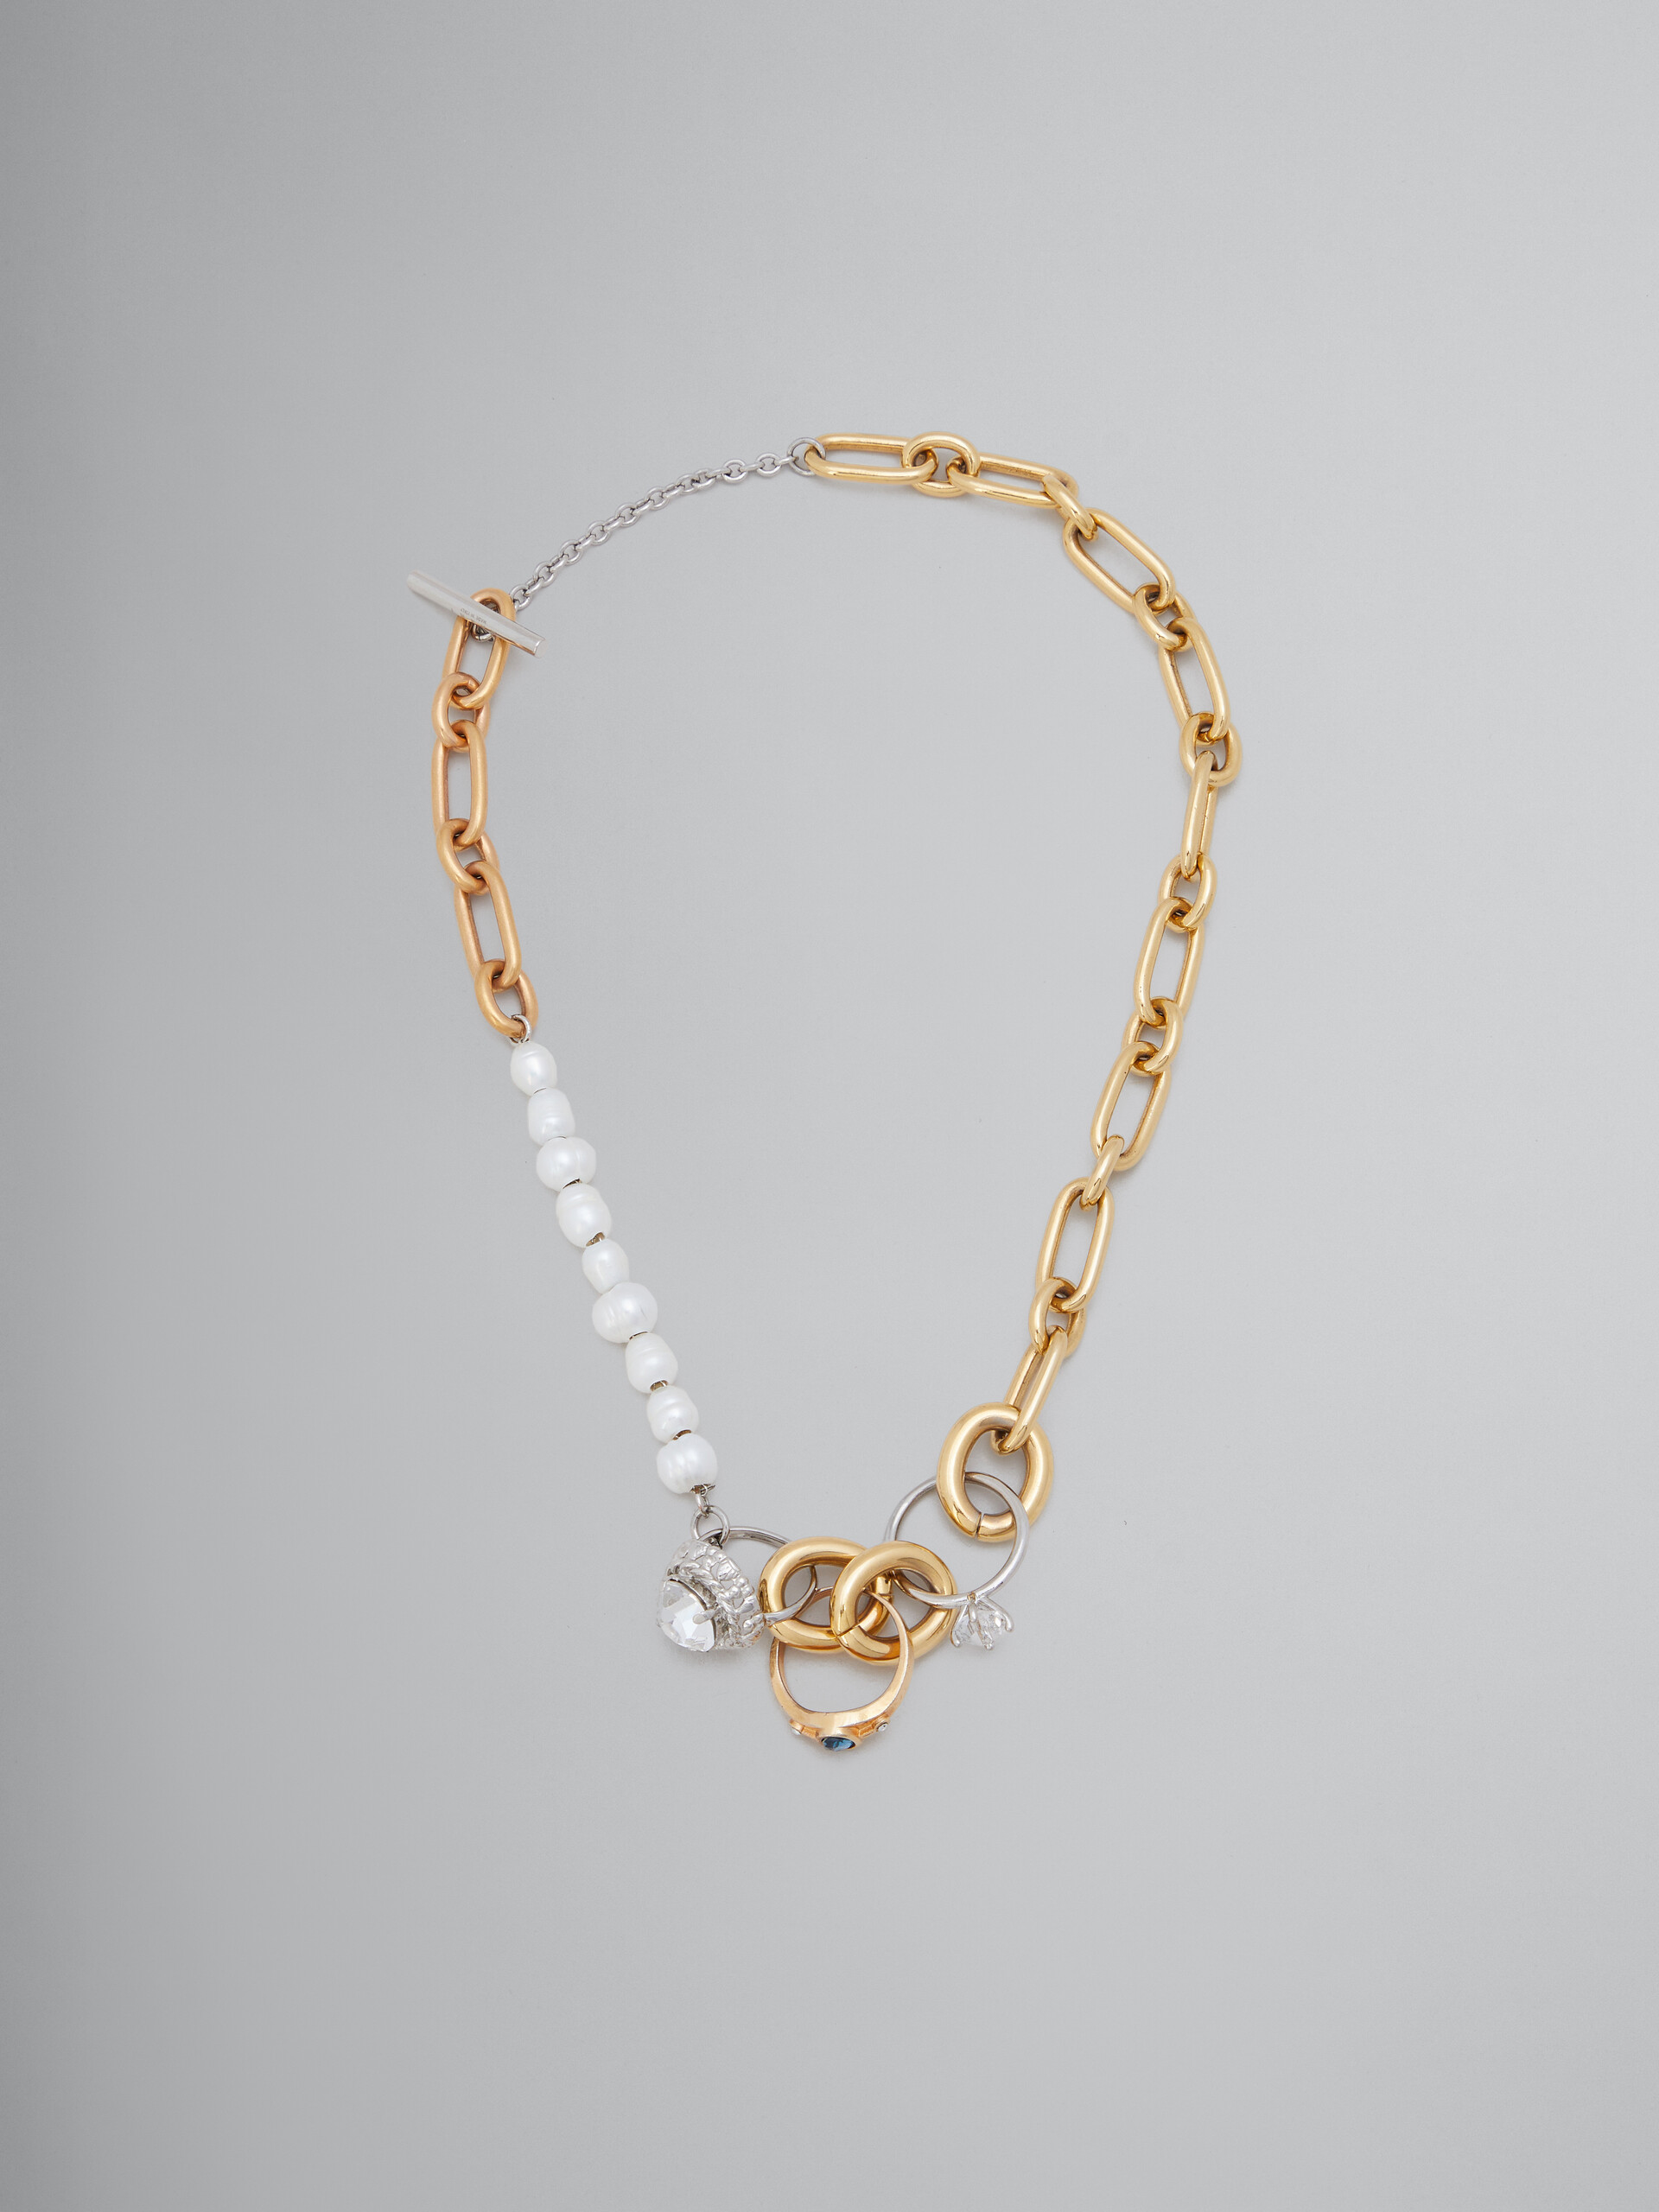 Collier en chaîne avec différents maillons, perles et anneaux - Colliers - Image 1